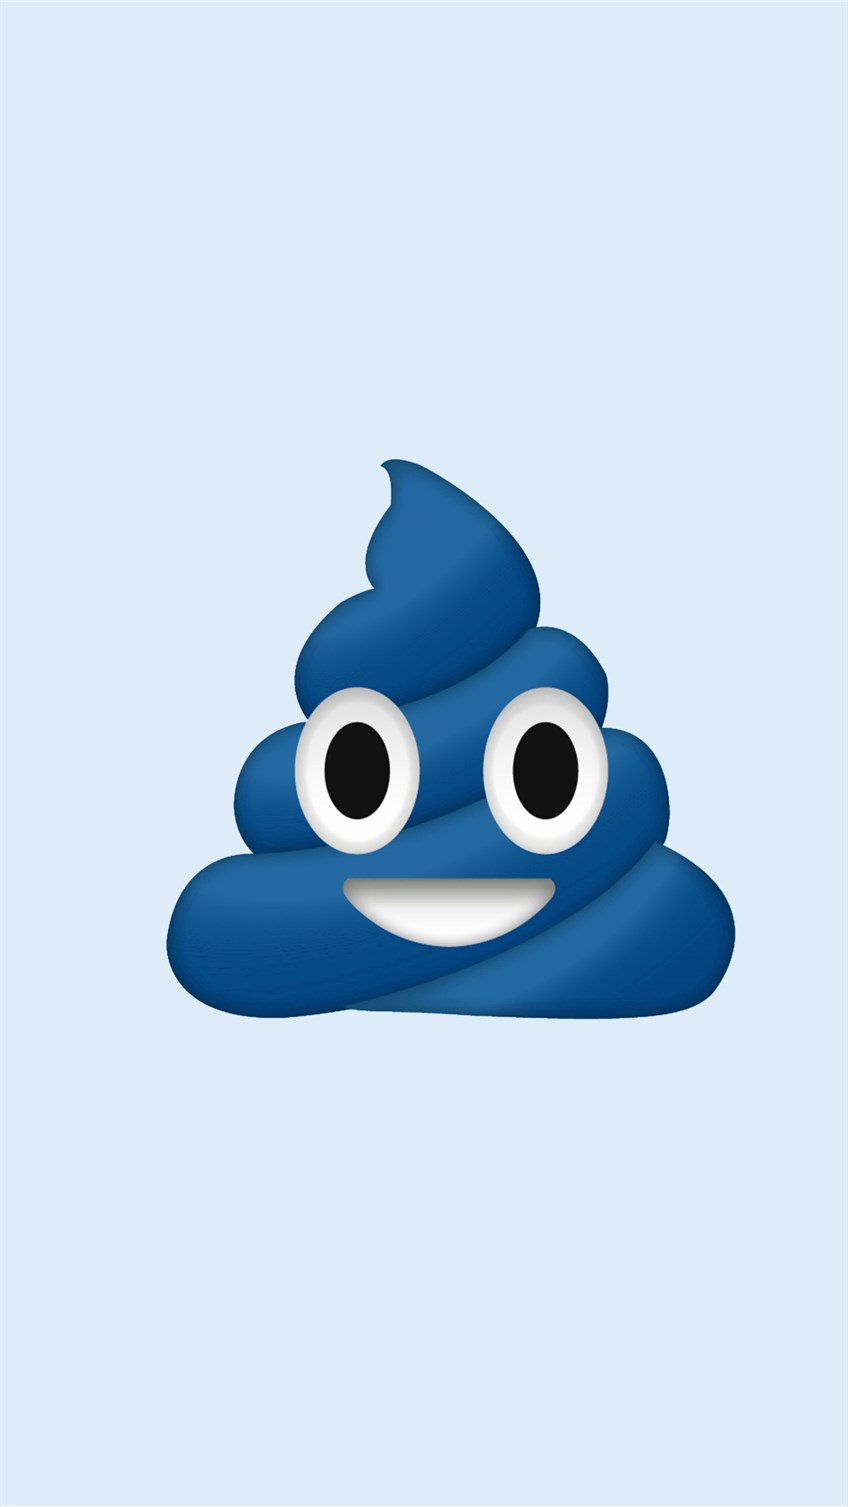 Blue Poop Emoji.jpg